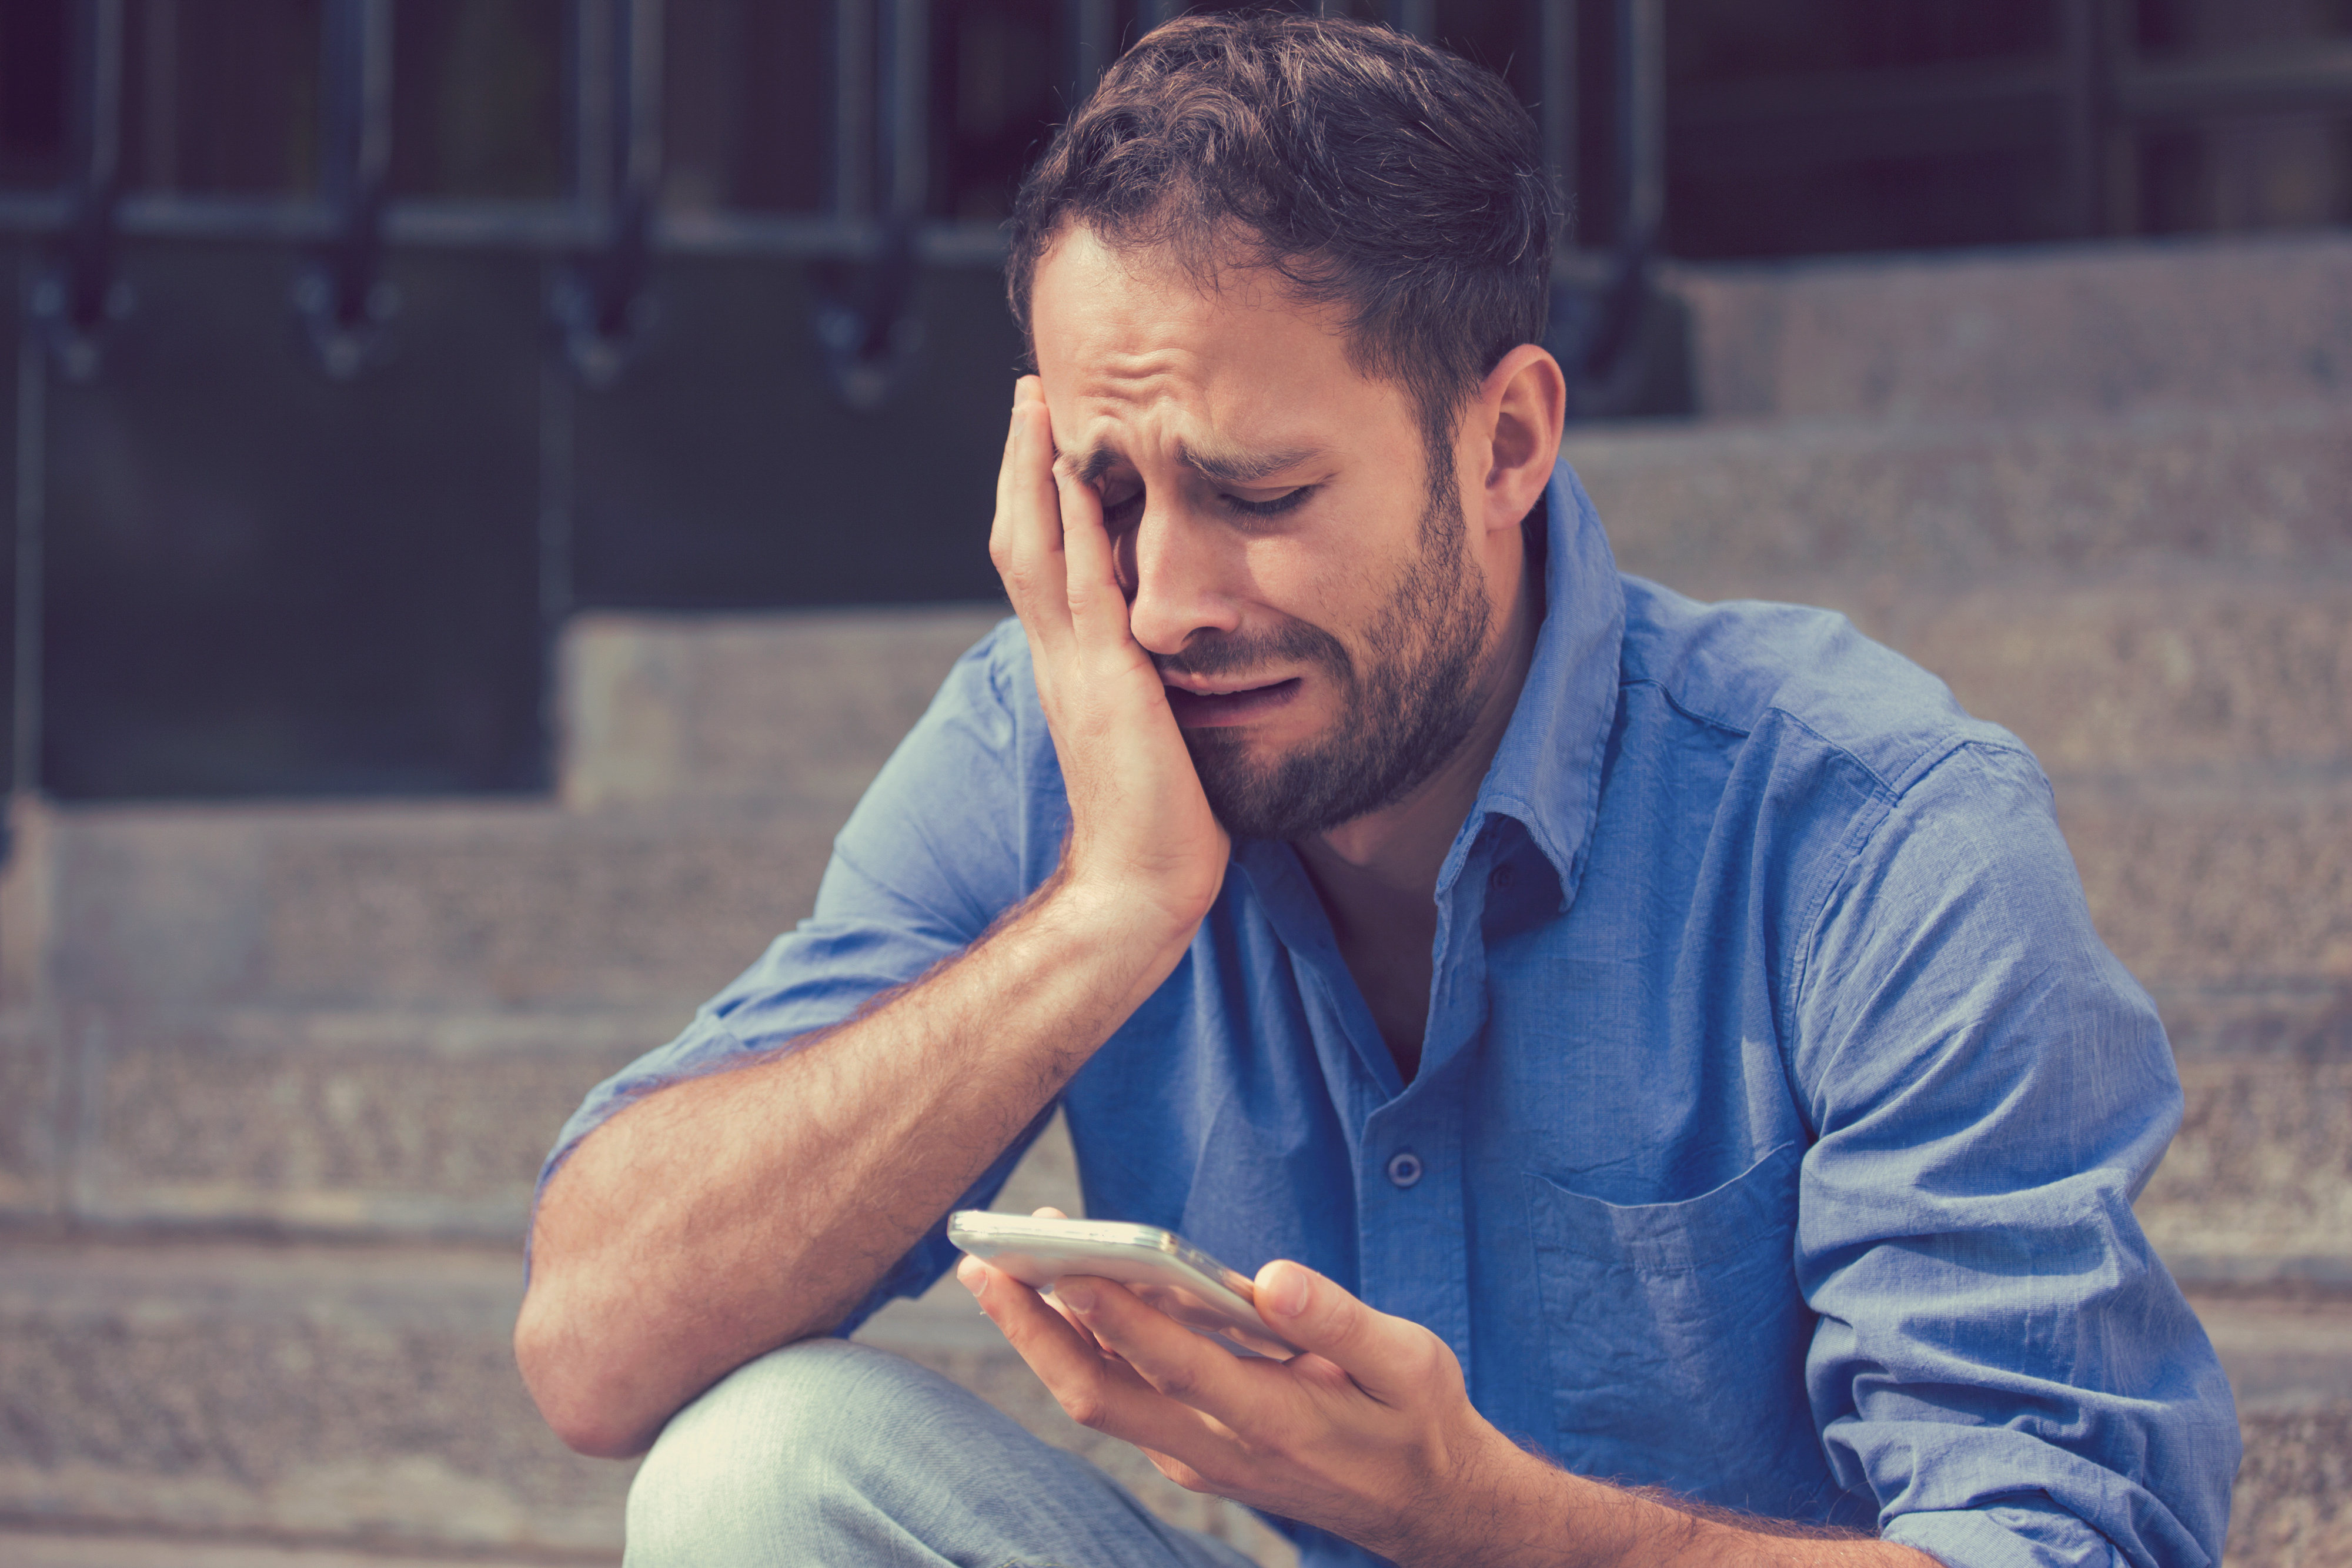 Un homme sanglote en fixant son téléphone portable | Source : Shutterstock